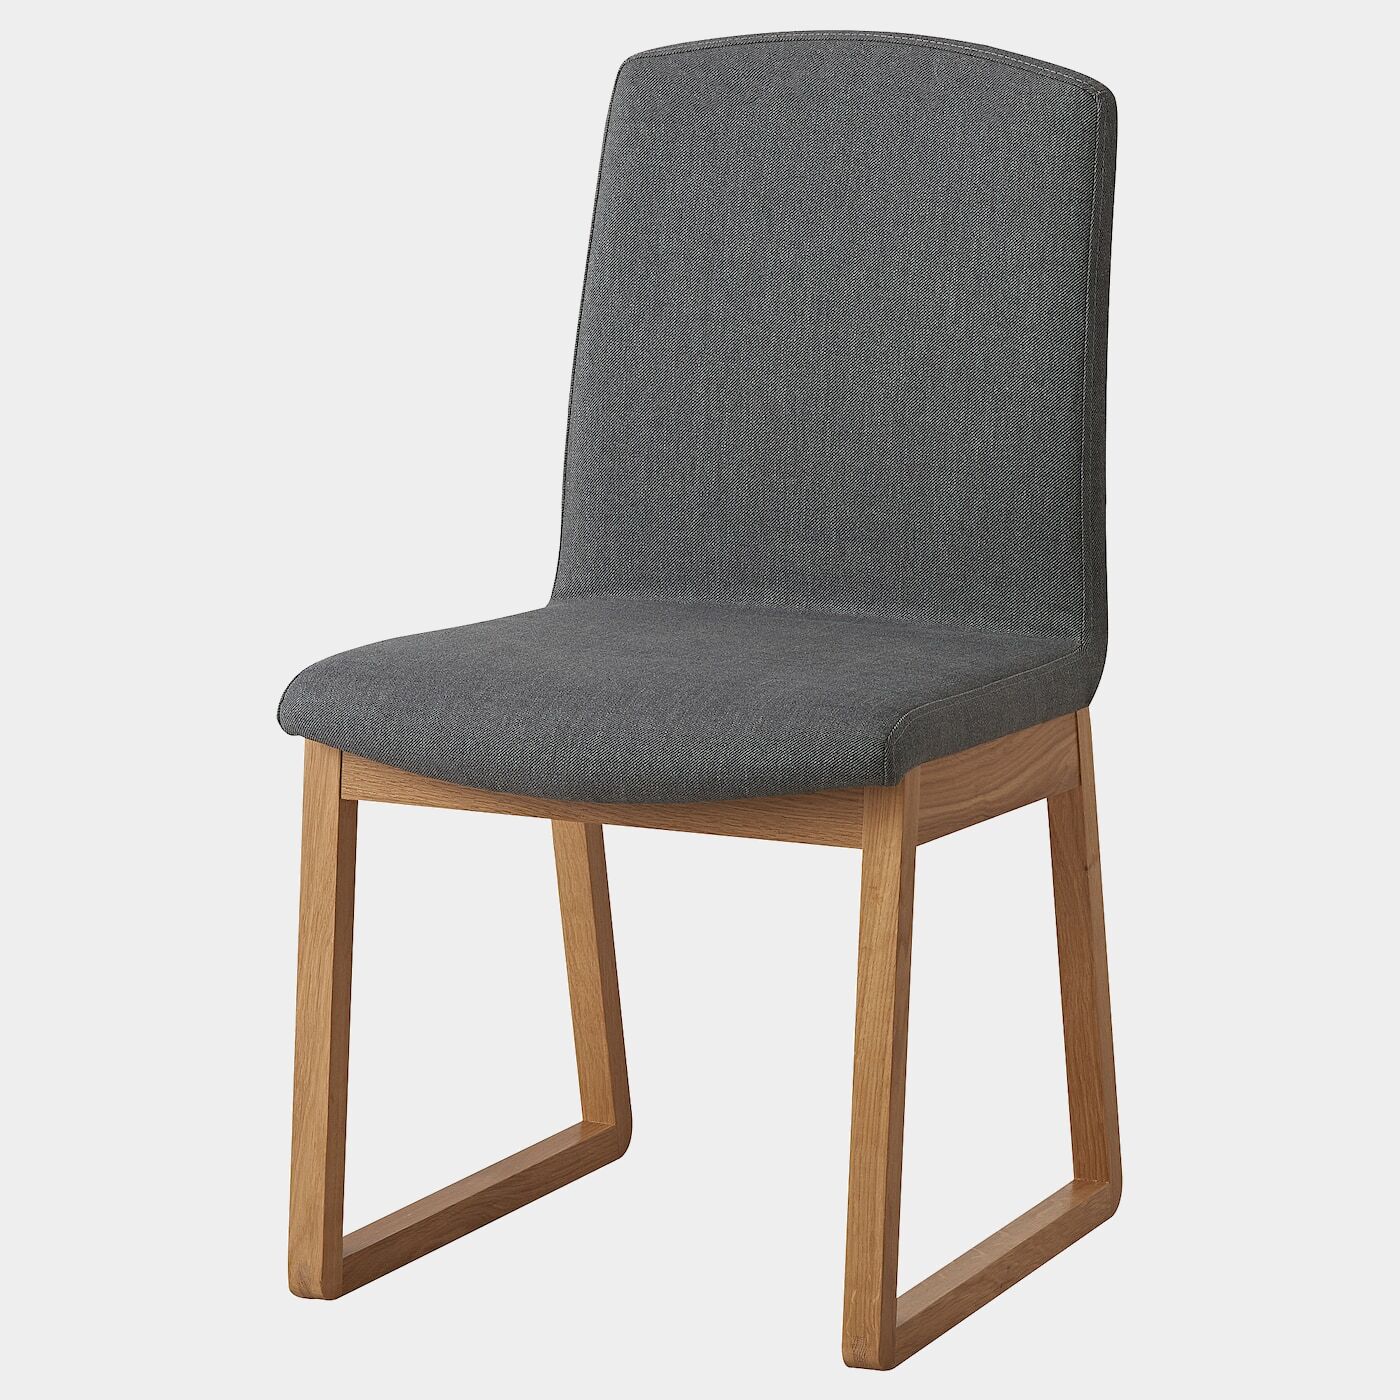 KARLHUGO Stuhl  - Esszimmerstühle - Möbel Ideen für dein Zuhause von Home Trends. Möbel Trends von Social Media Influencer für dein Skandi Zuhause.